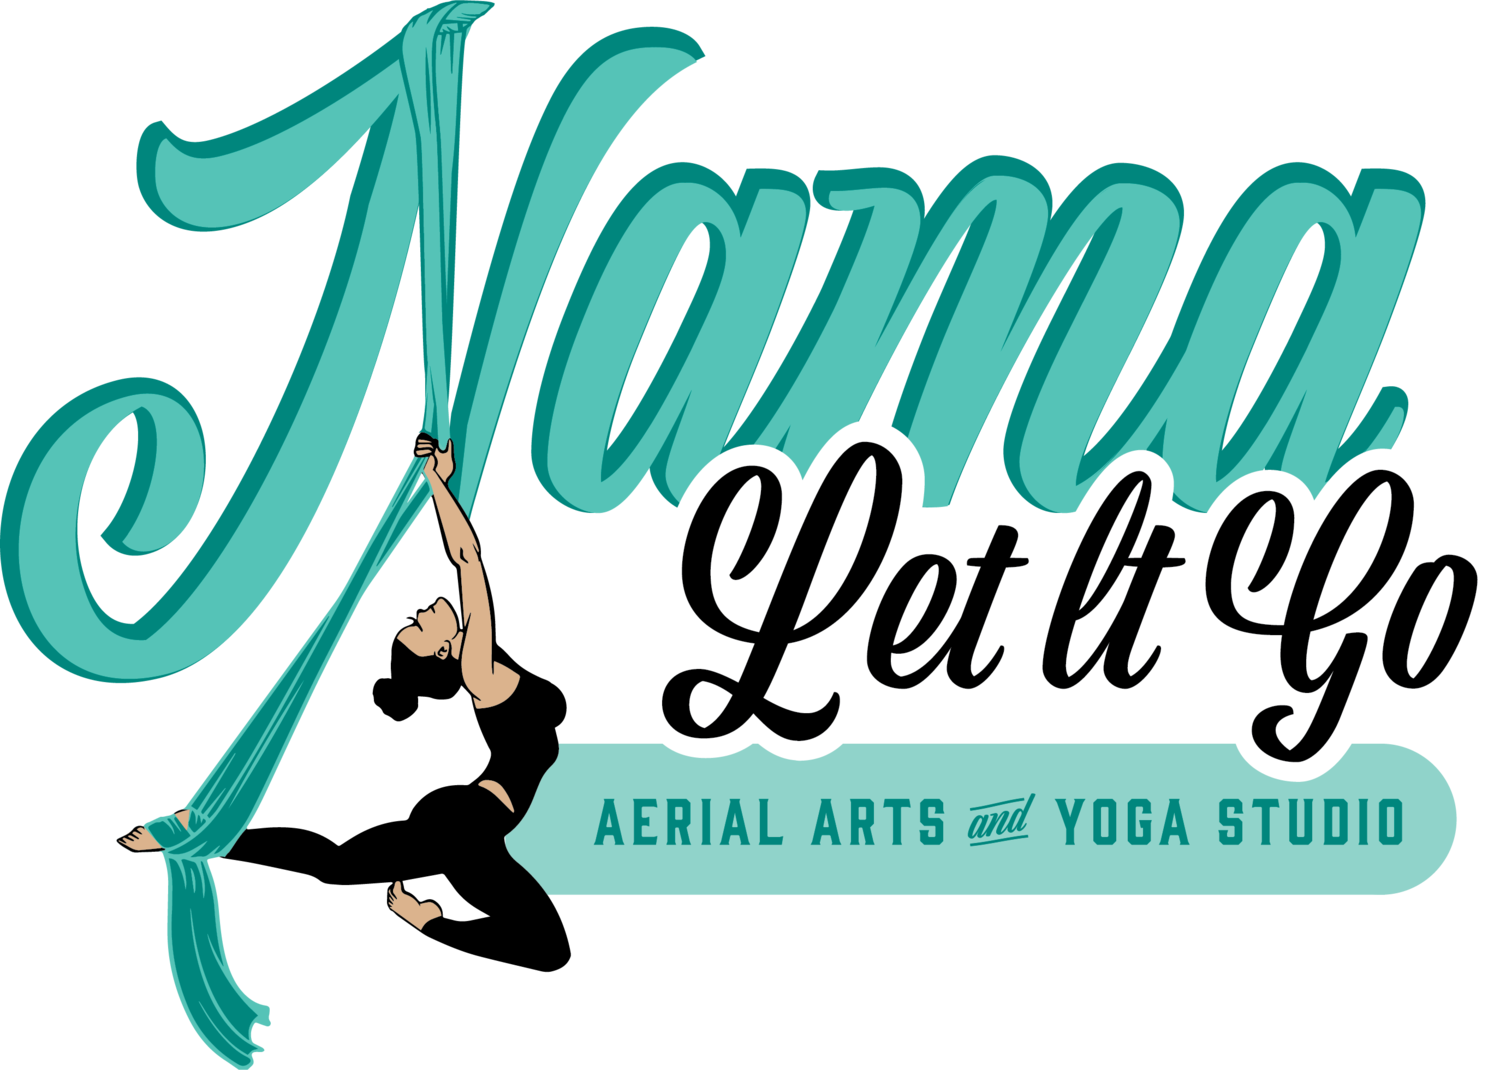 Nama Let It Go Aerial Arts &amp; Yoga Studio